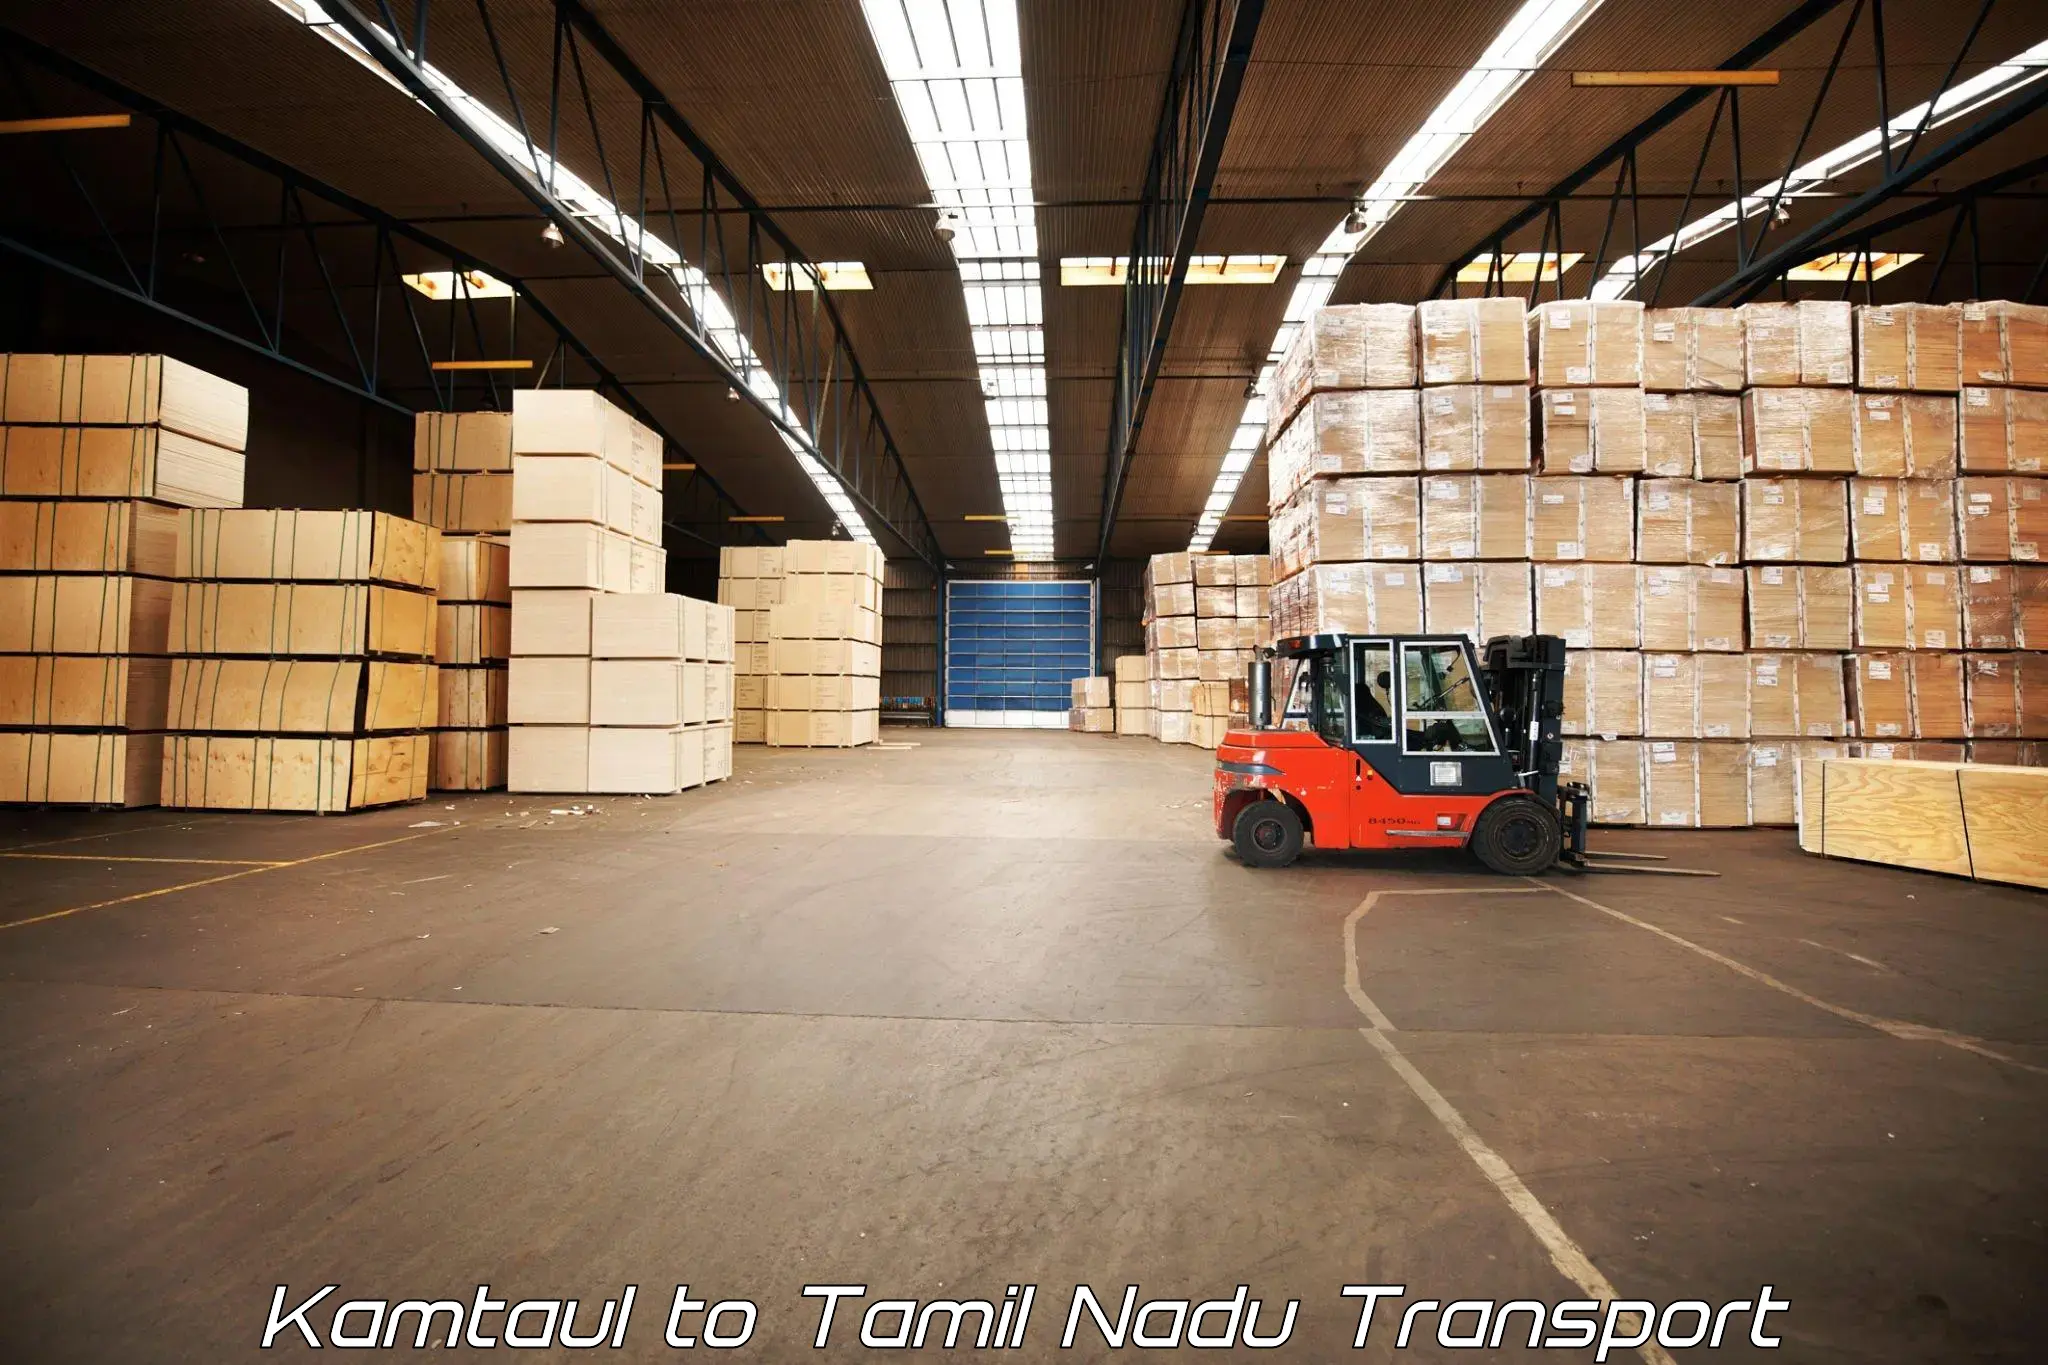 Commercial transport service Kamtaul to Tirupattur